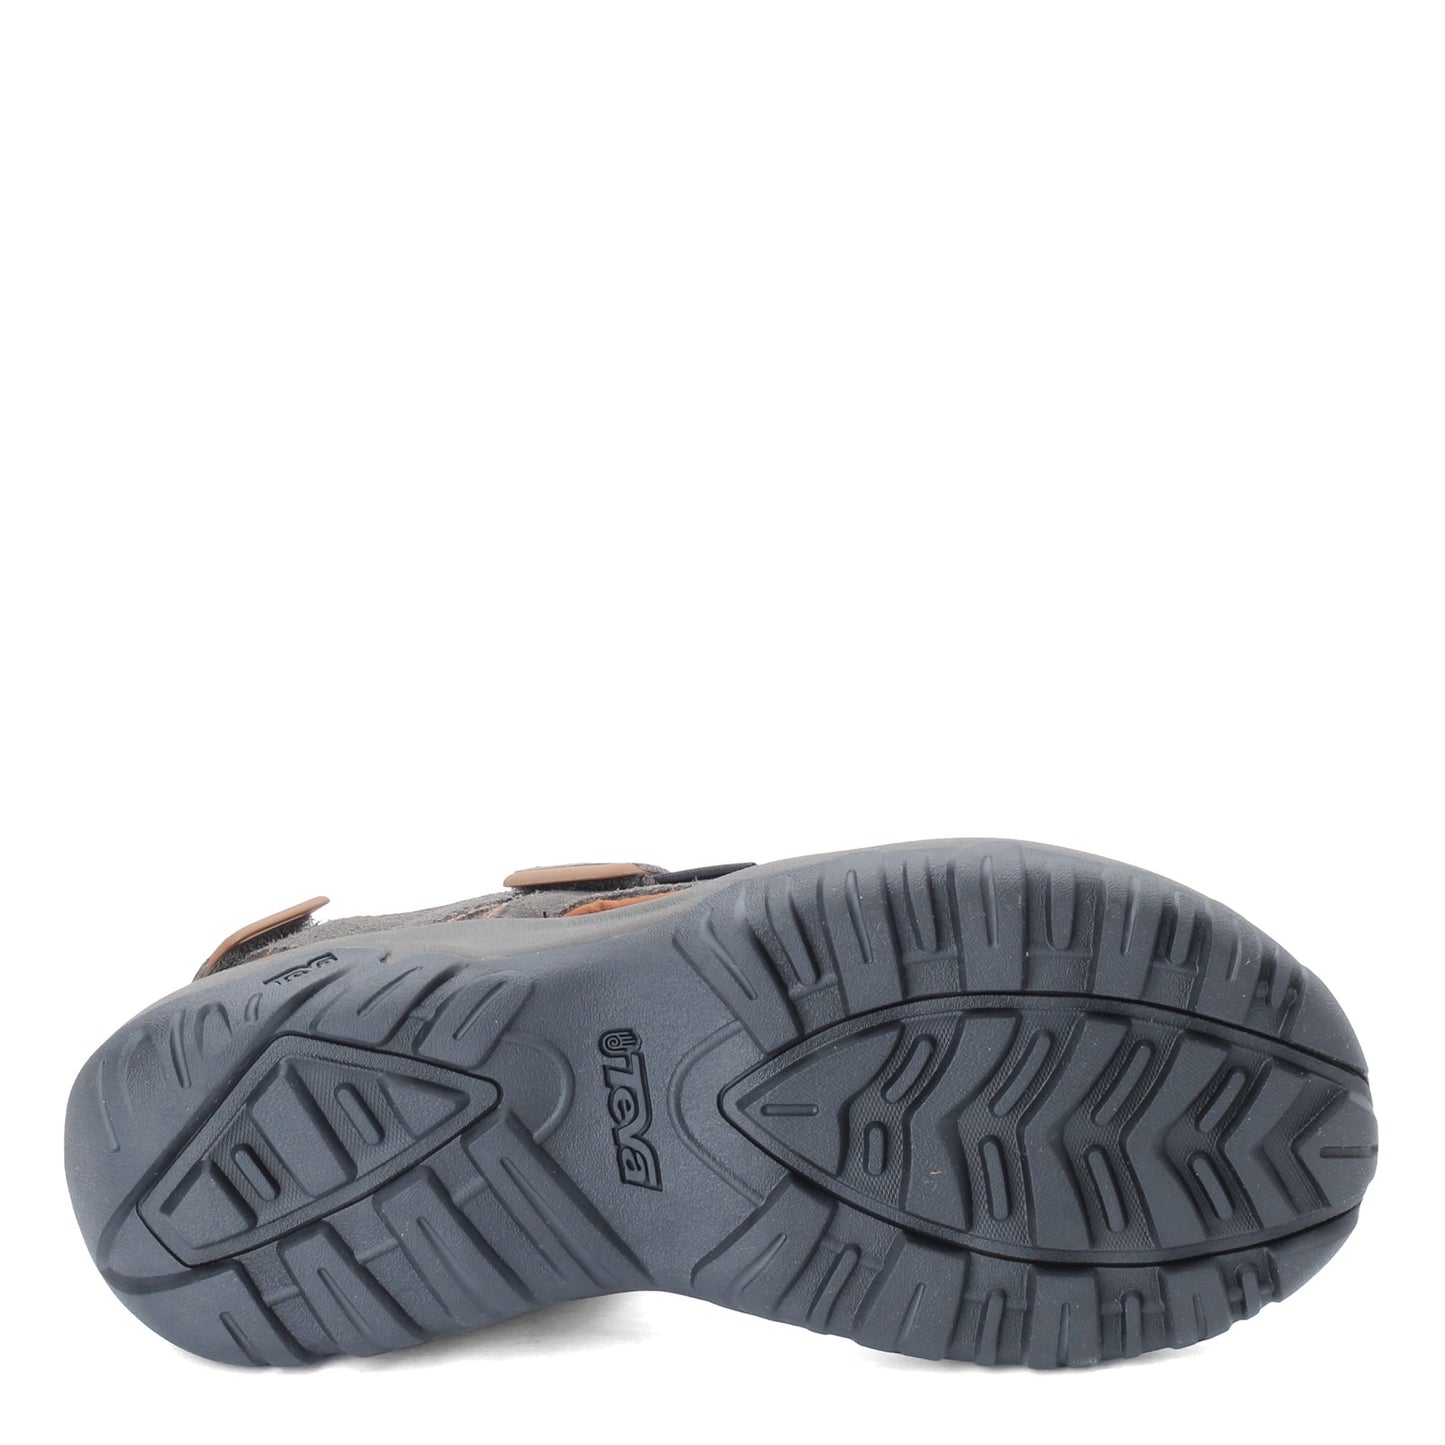 Peltz Shoes  Men's Teva Katavi 2 Sandal BLACK OLIVE 1019192-BLKO